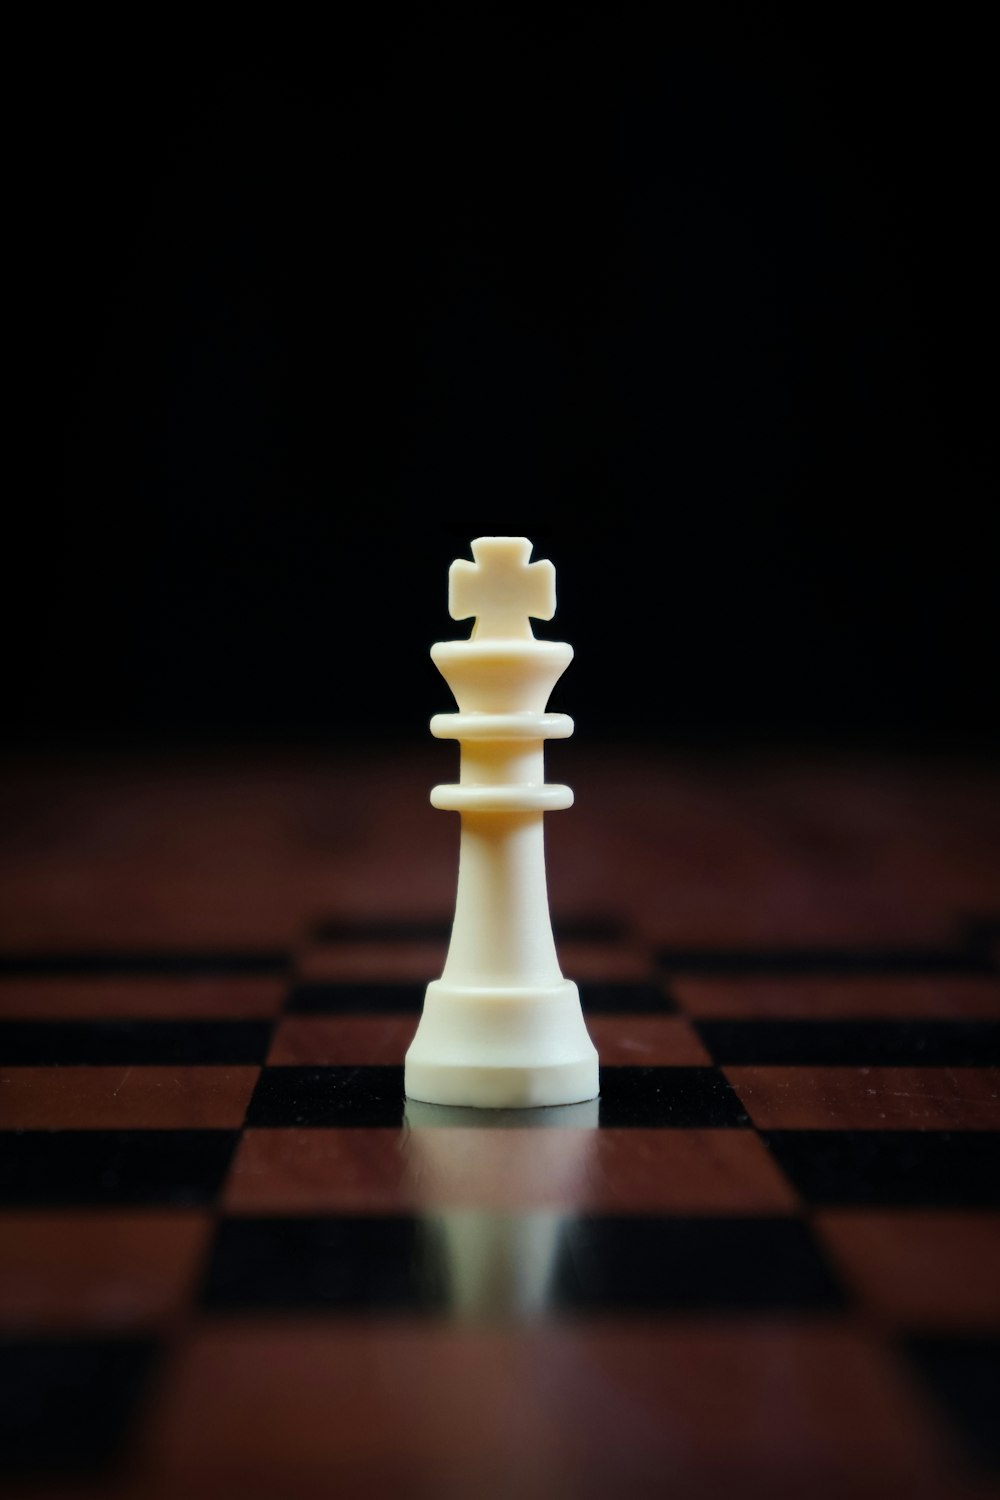 Una pieza de ajedrez blanca sentada encima de un tablero de ajedrez